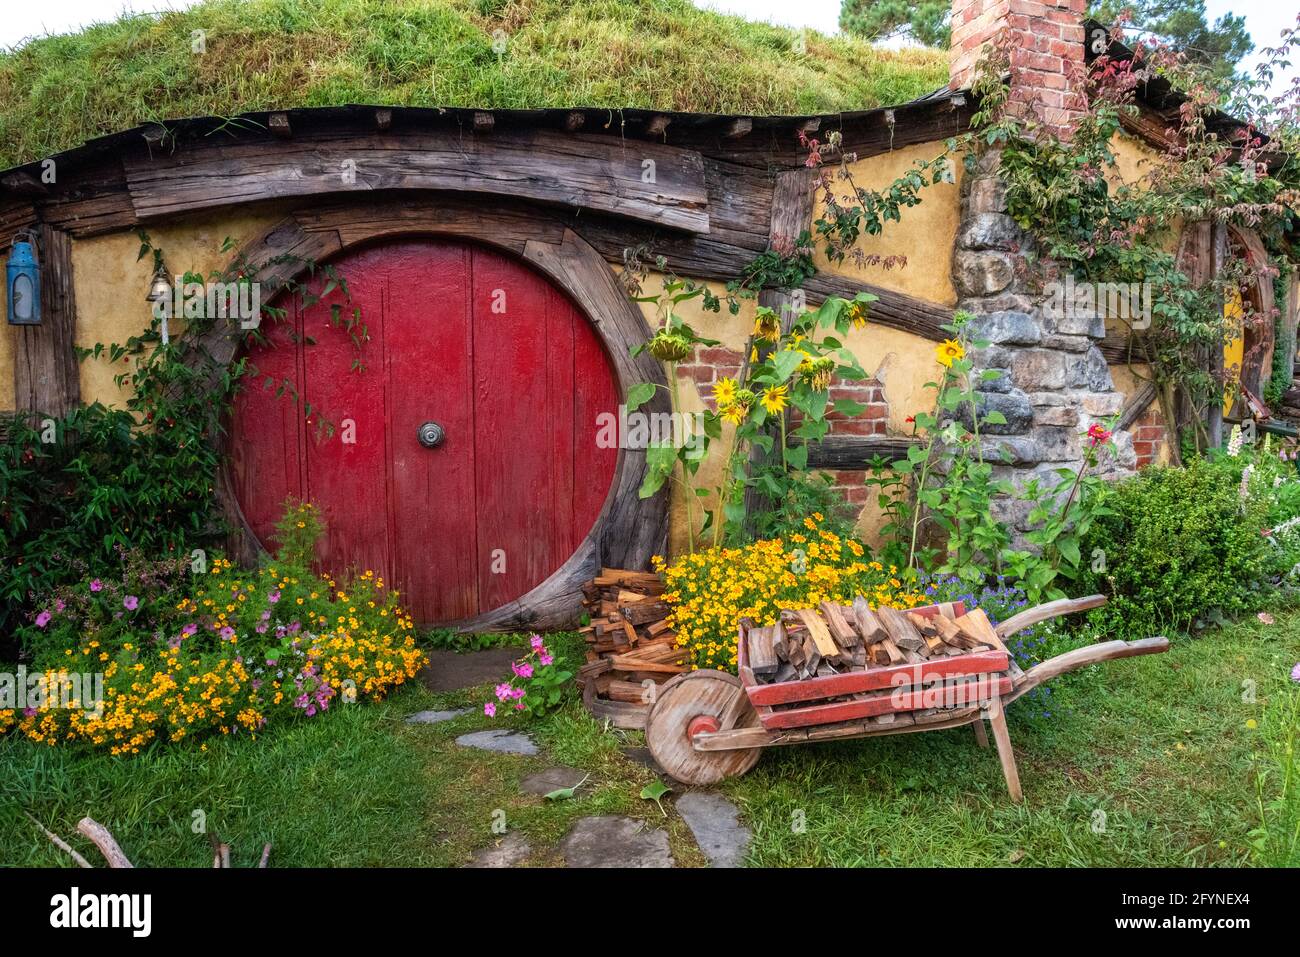 La casa di Samwise Gargee nel villaggio di Hobbiton dai film The Hobbit e Lord of the Rings, Nuova Zelanda Foto Stock